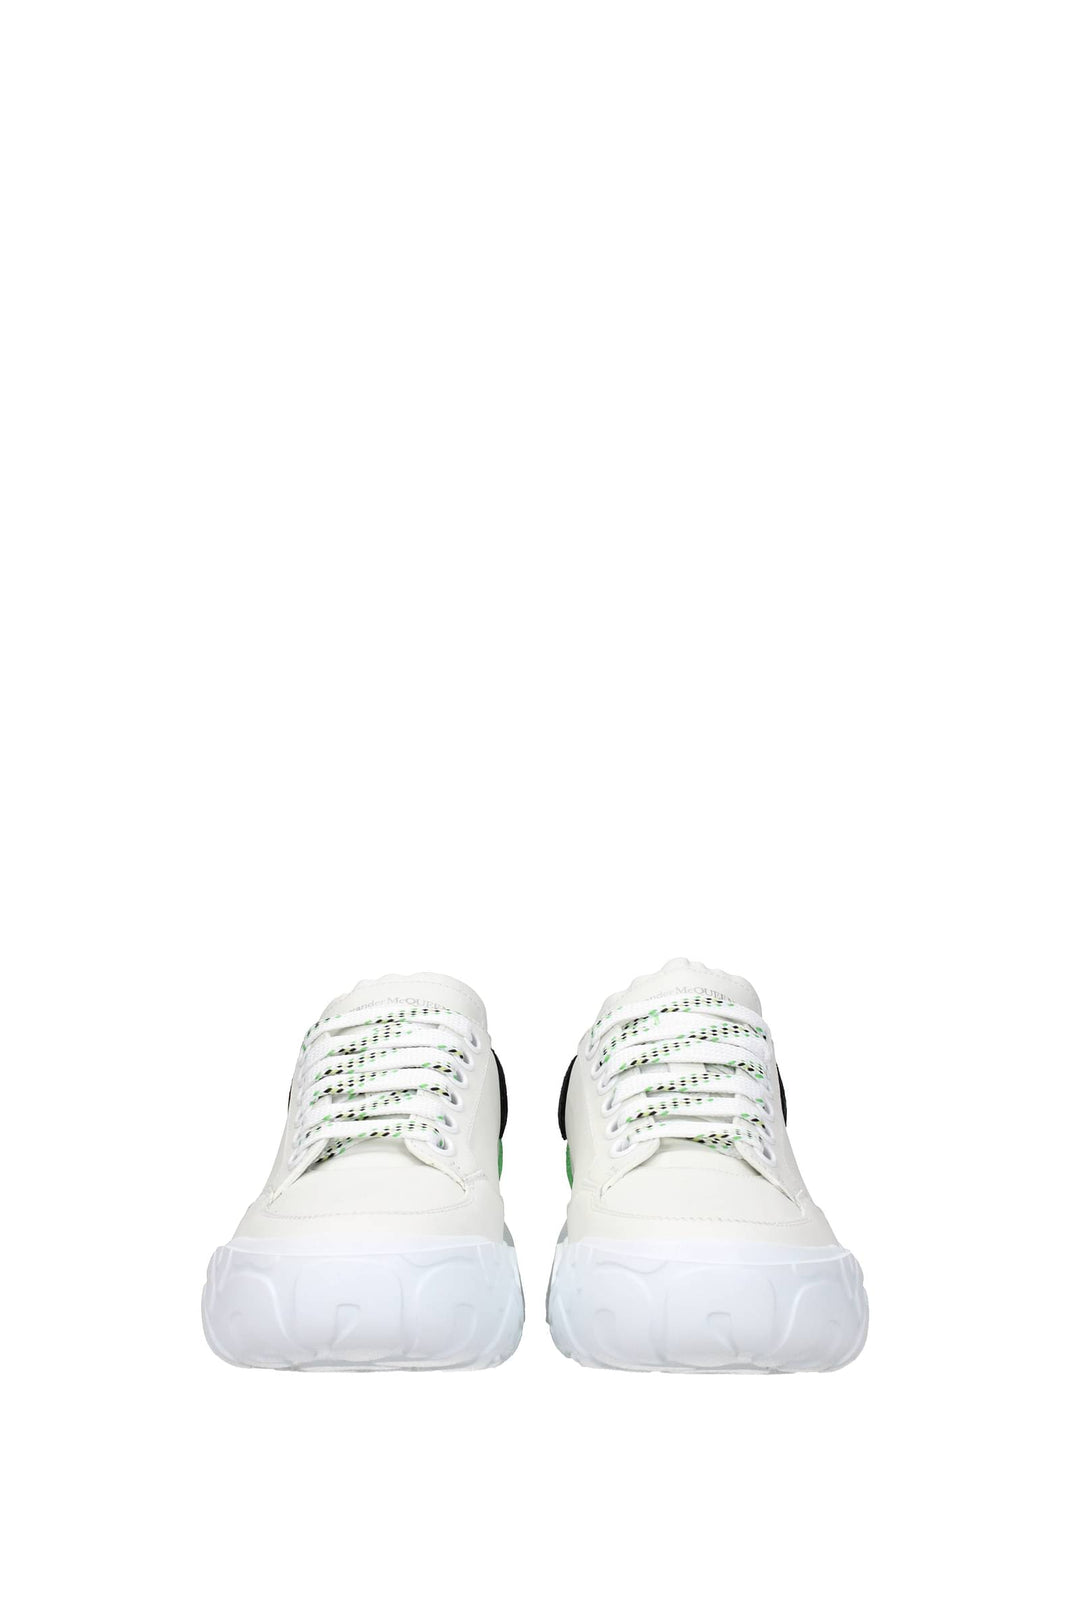 Sneakers Court Pelle Bianco Verde - Alexander McQueen - Donna